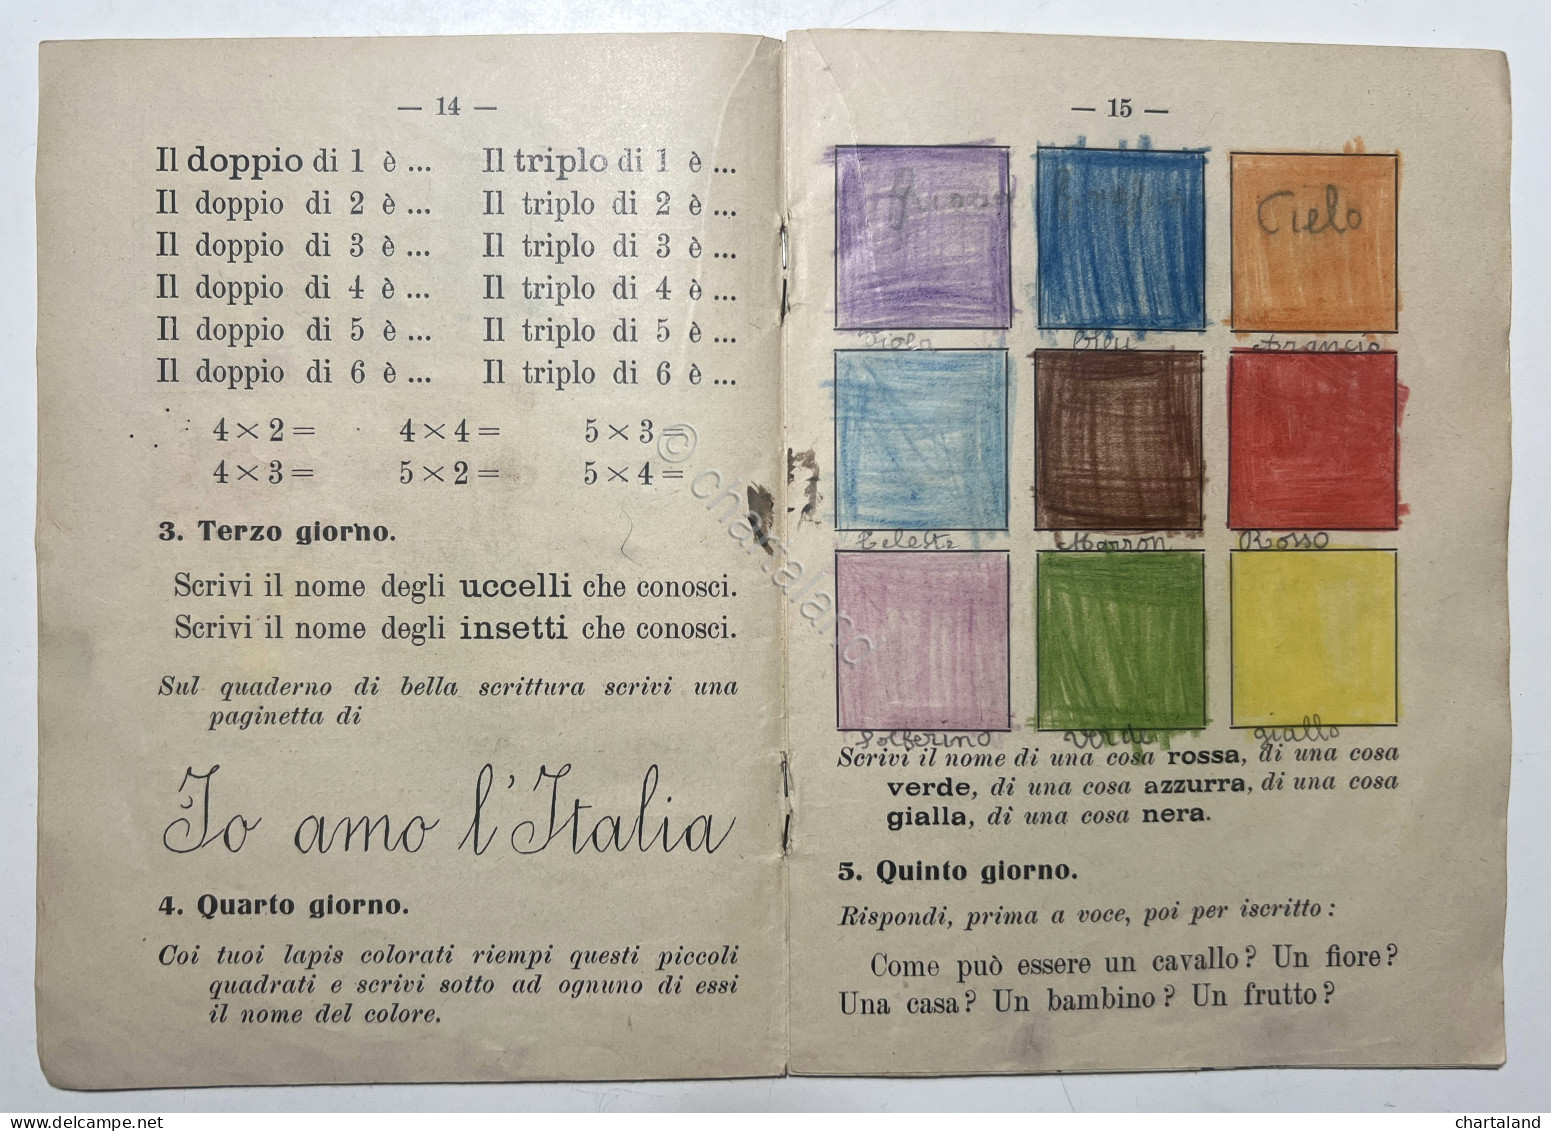 Libri Ragazzi - A. Plata - Compiti Per Le Vacanze: Classe Prima - Ed. 1933 - Other & Unclassified